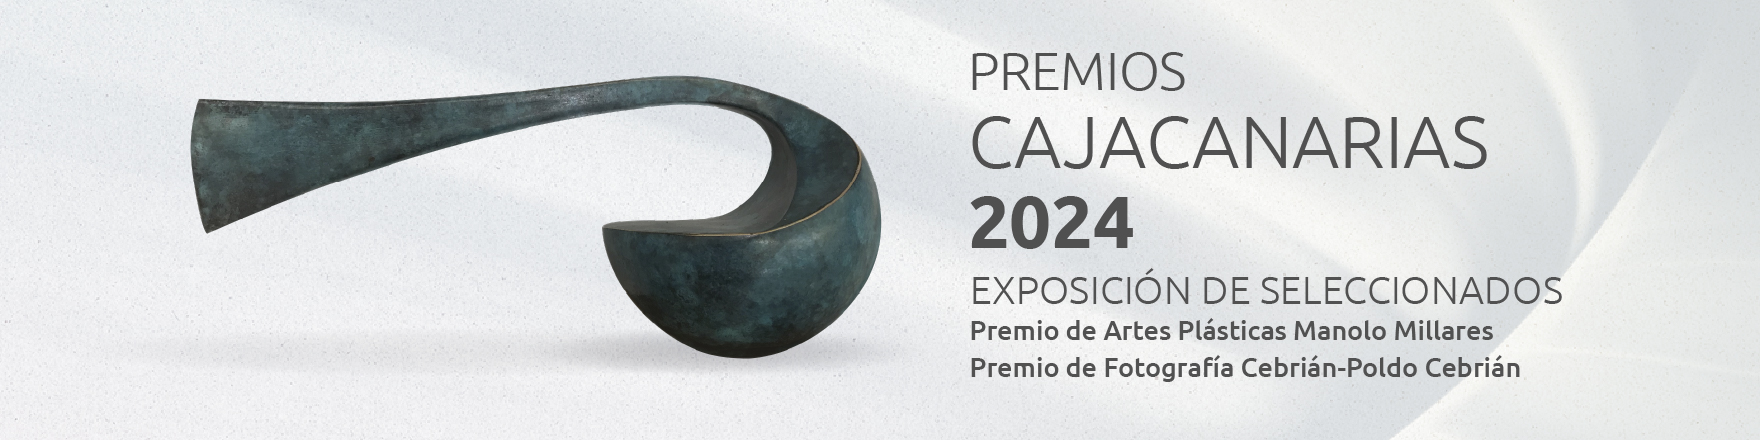 Exposición de seleccionados 2024 - Premio de Artes Plásticas y Premio de Fotografía